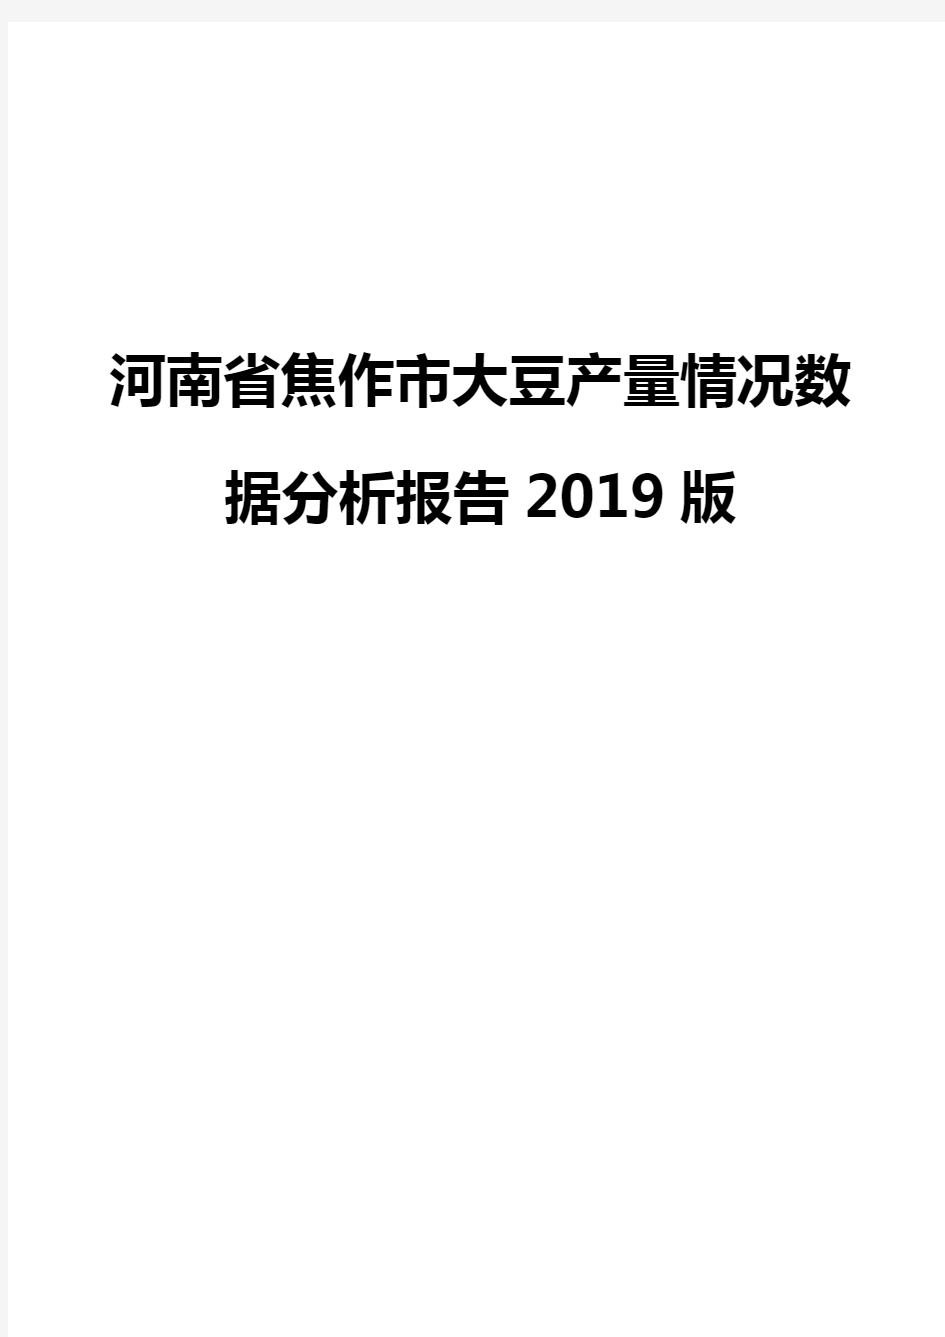 河南省焦作市大豆产量情况数据分析报告2019版